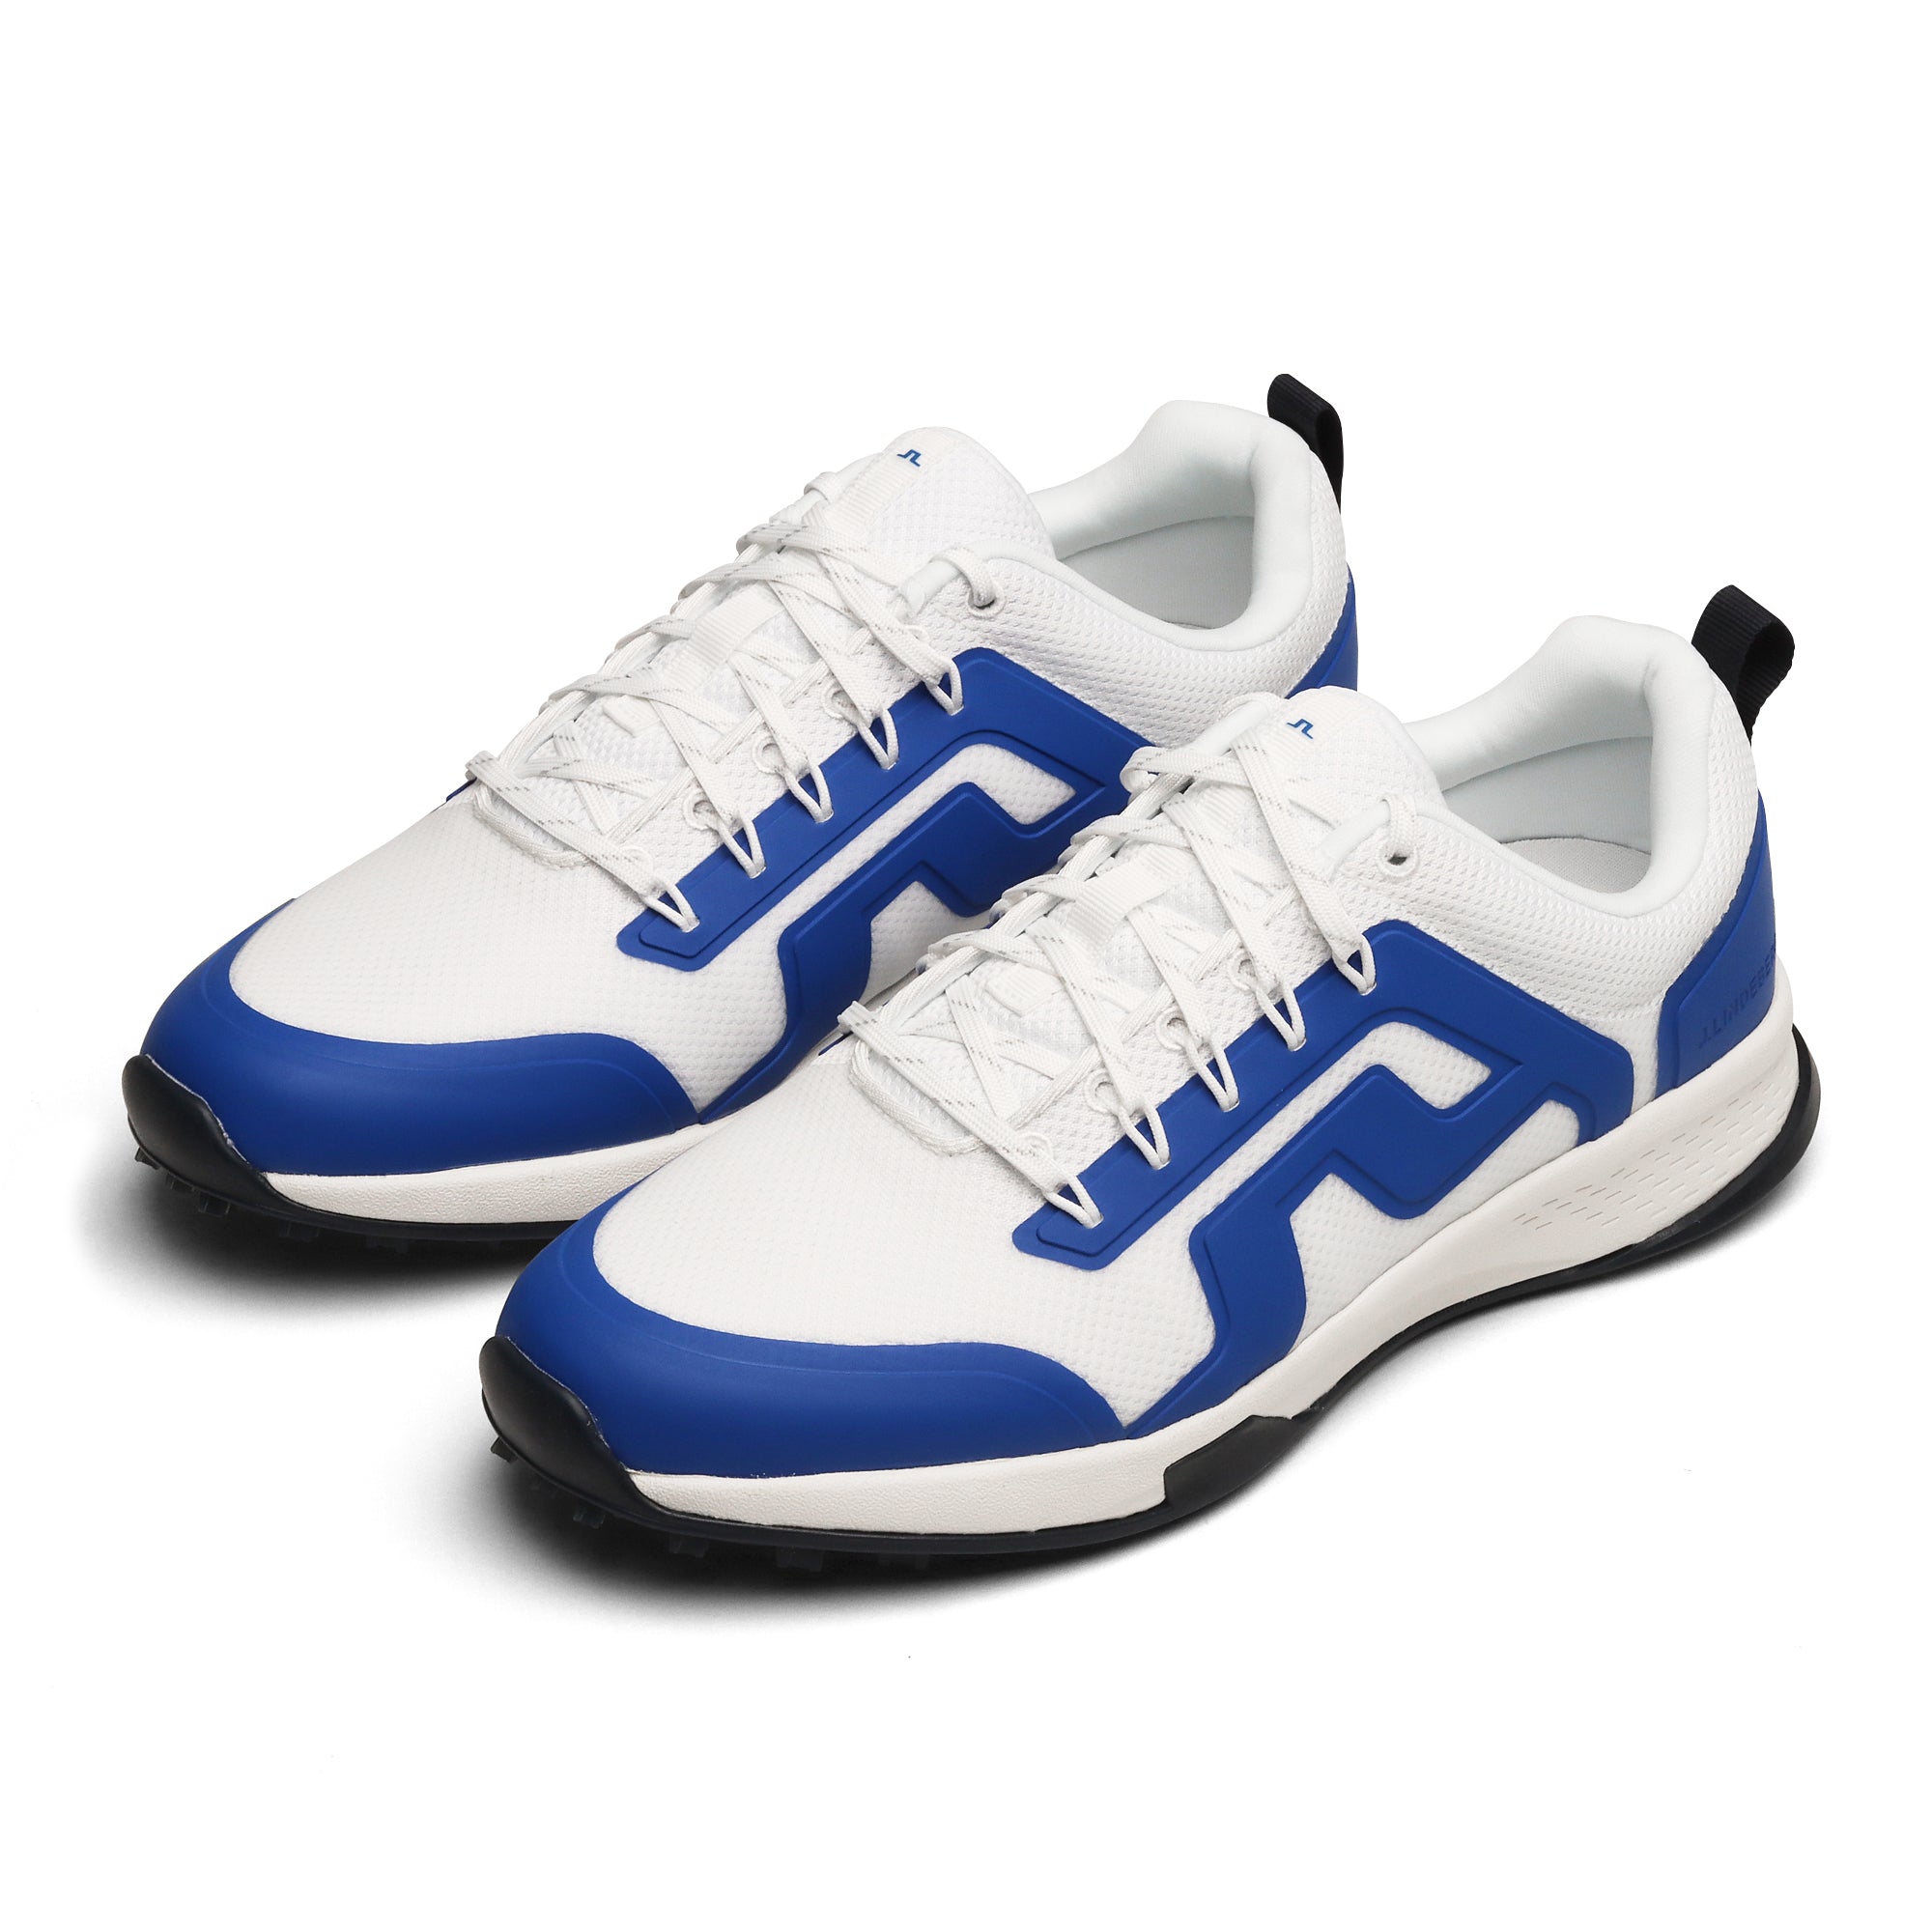 J.Lindeberg Range Finder Golf Shoes Blue 2